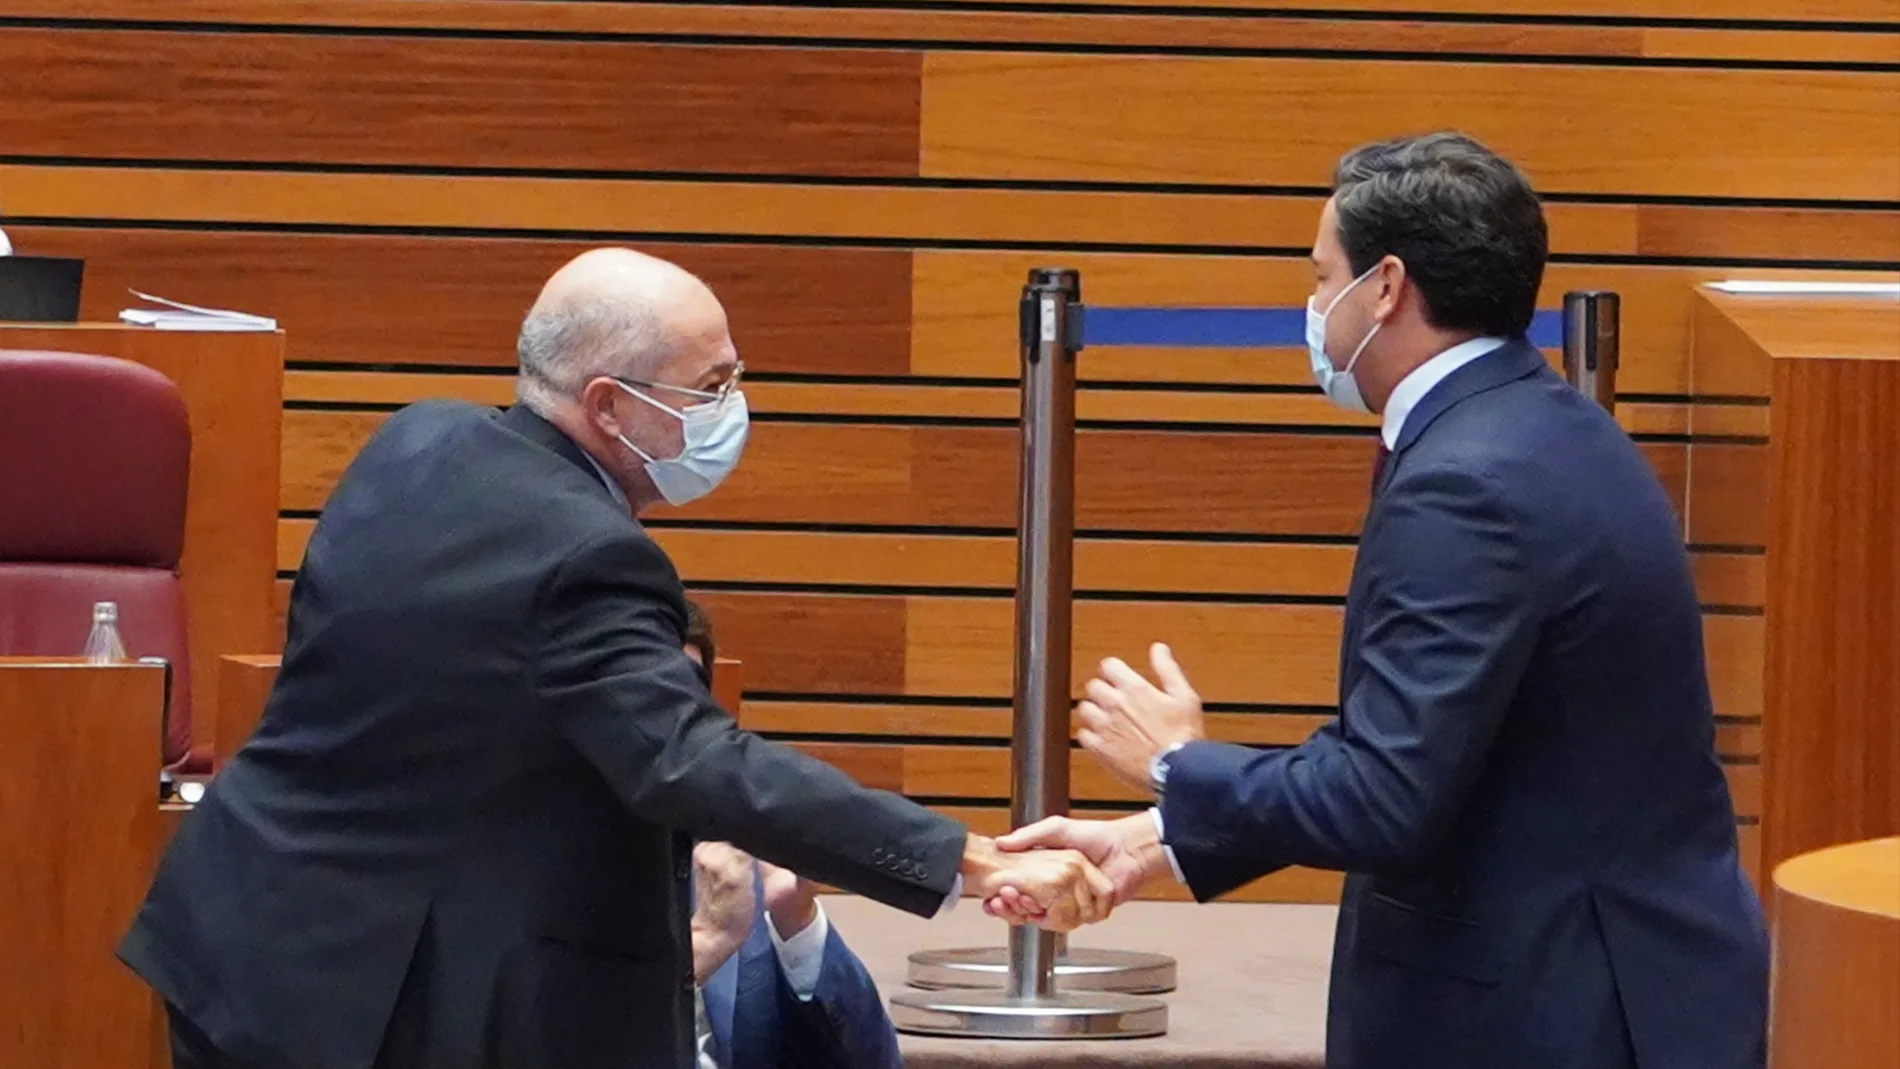 El vicepresidente Igea felicita con un apretón de manos al portavoz del PP en las Cortes, Raúl de la Hoz, tras su intervención en el pleno